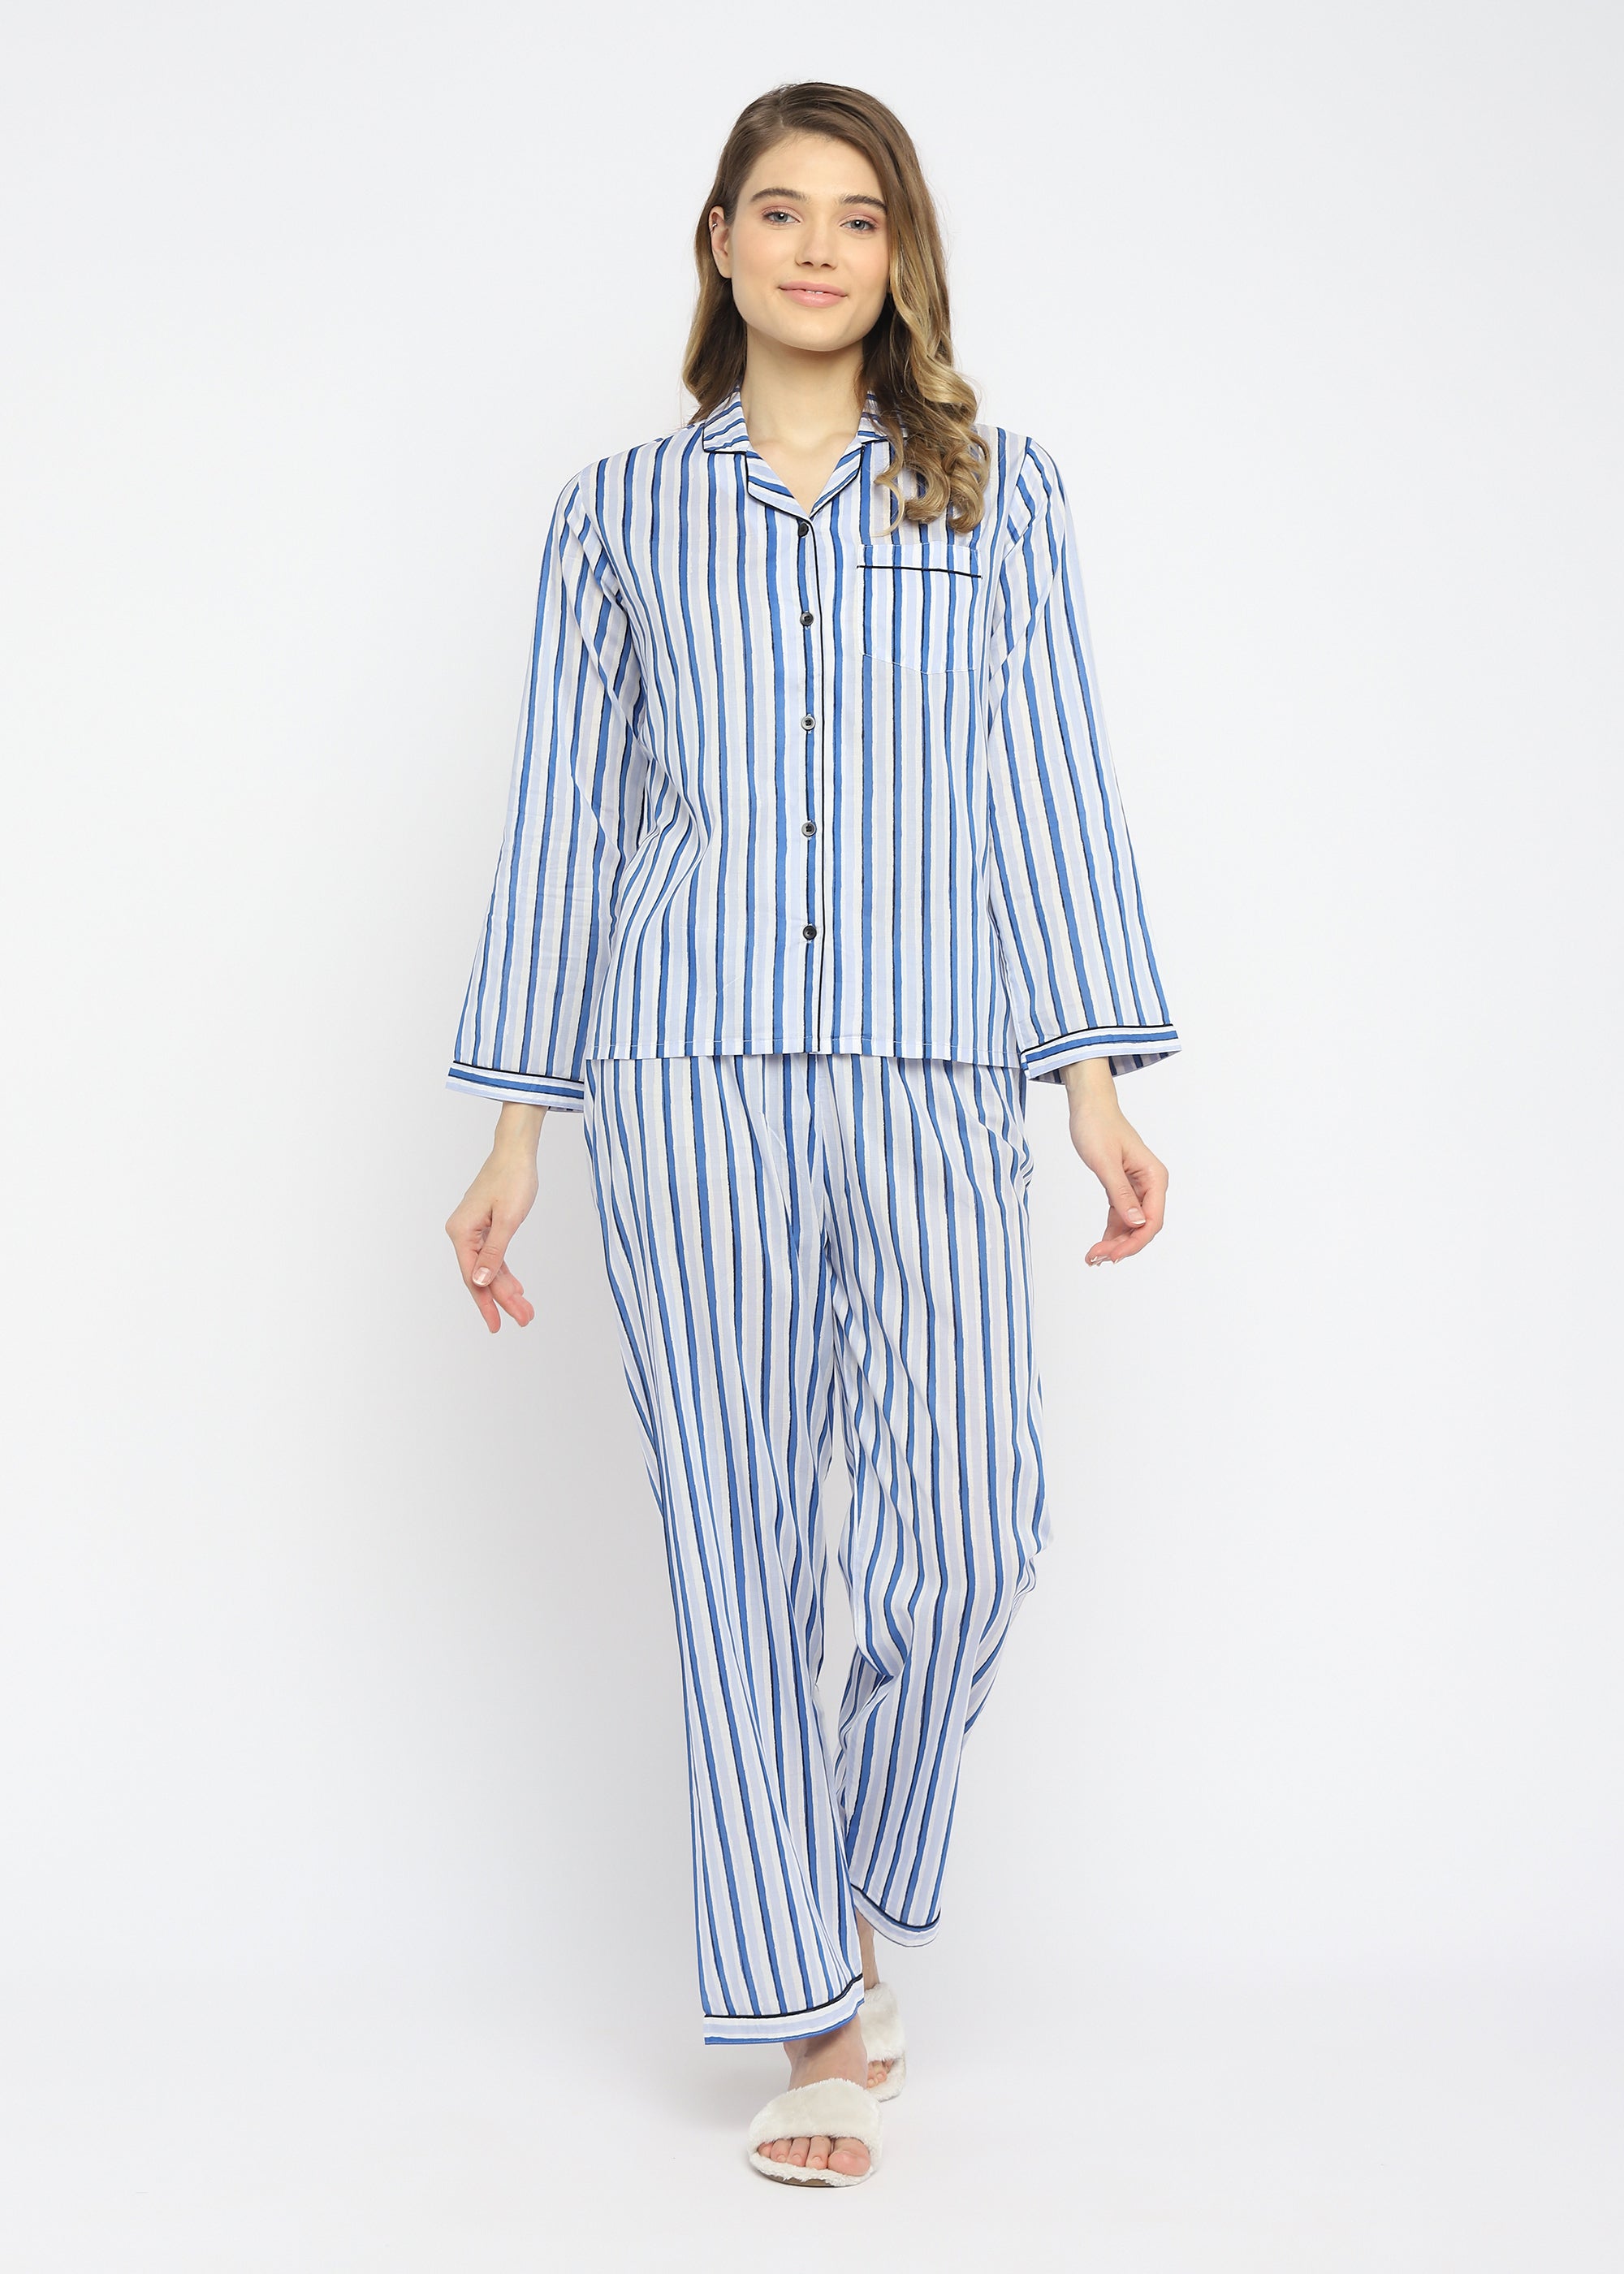 Blue Stripes Long Sleeve Women's Night Suit - Shopbloom